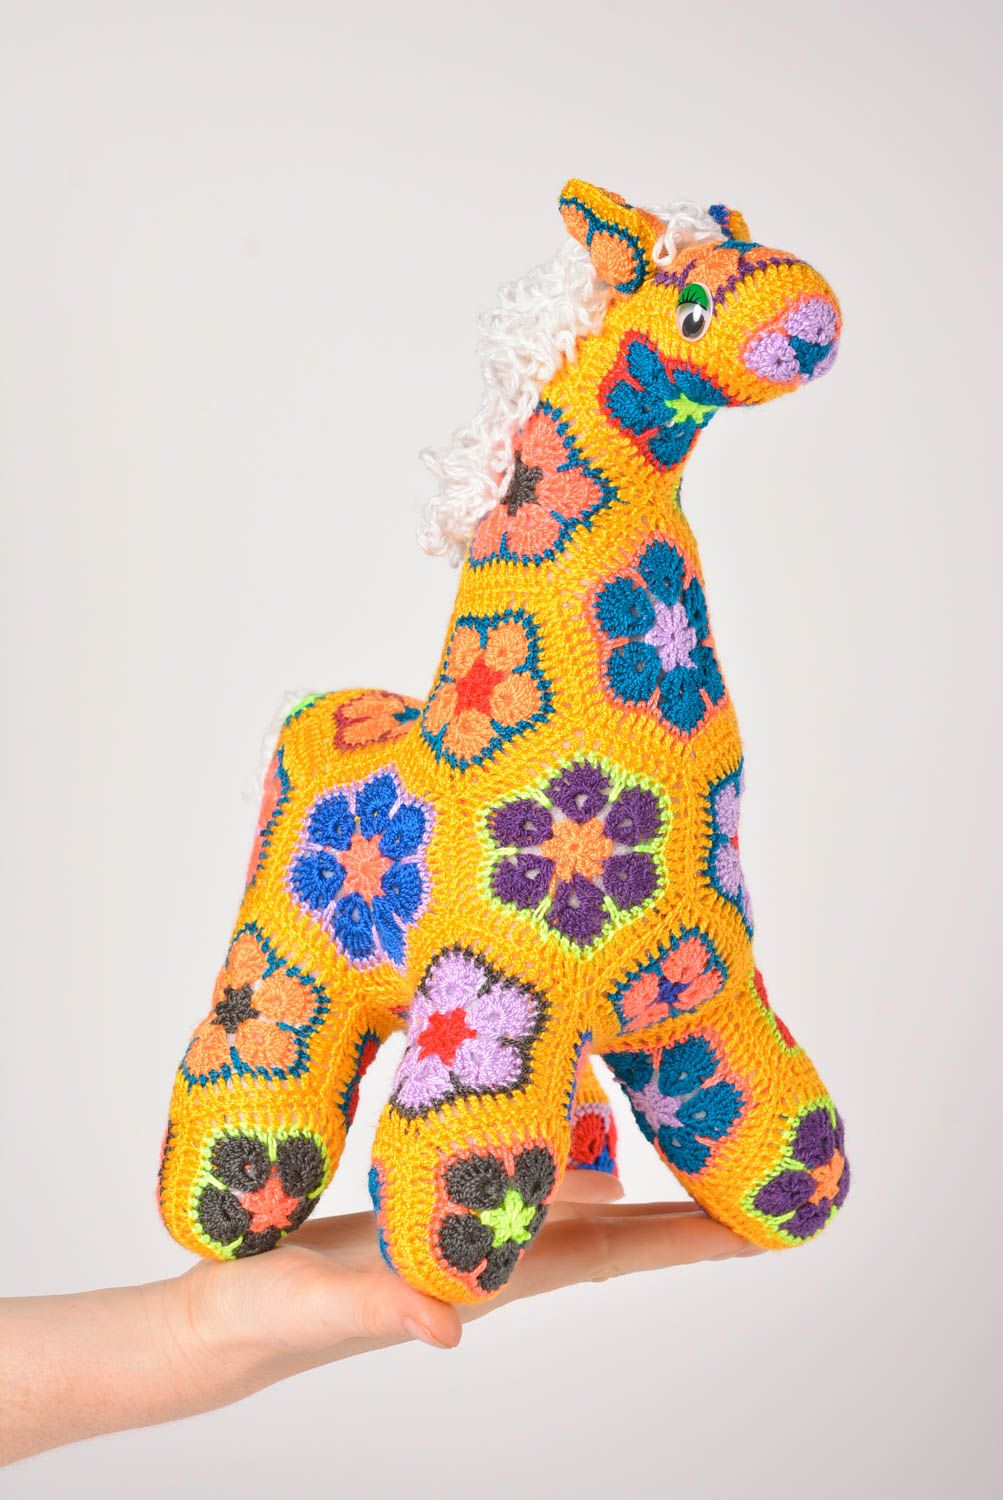 Handmade Spielzeug Giraffe Kuscheltier gehäkelt Geschenk Idee bunt gelb groß foto 5